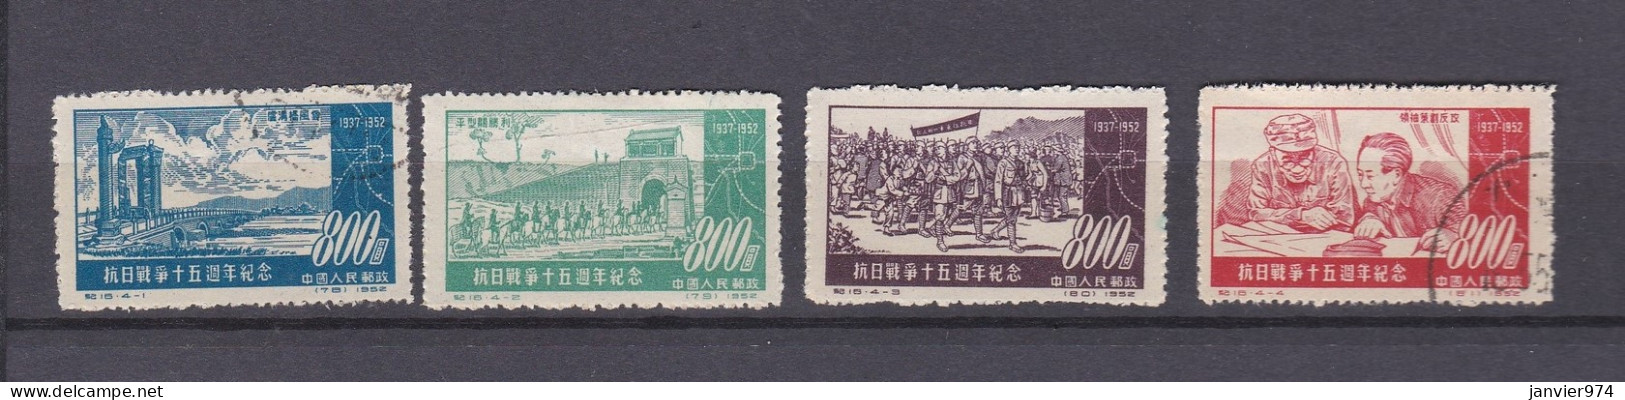 Chine 1952 La Serie Complete, Anniversaire De La Fin De La Guerre Contre Le Japon, 4 Timbres . 180 à 183 - Used Stamps